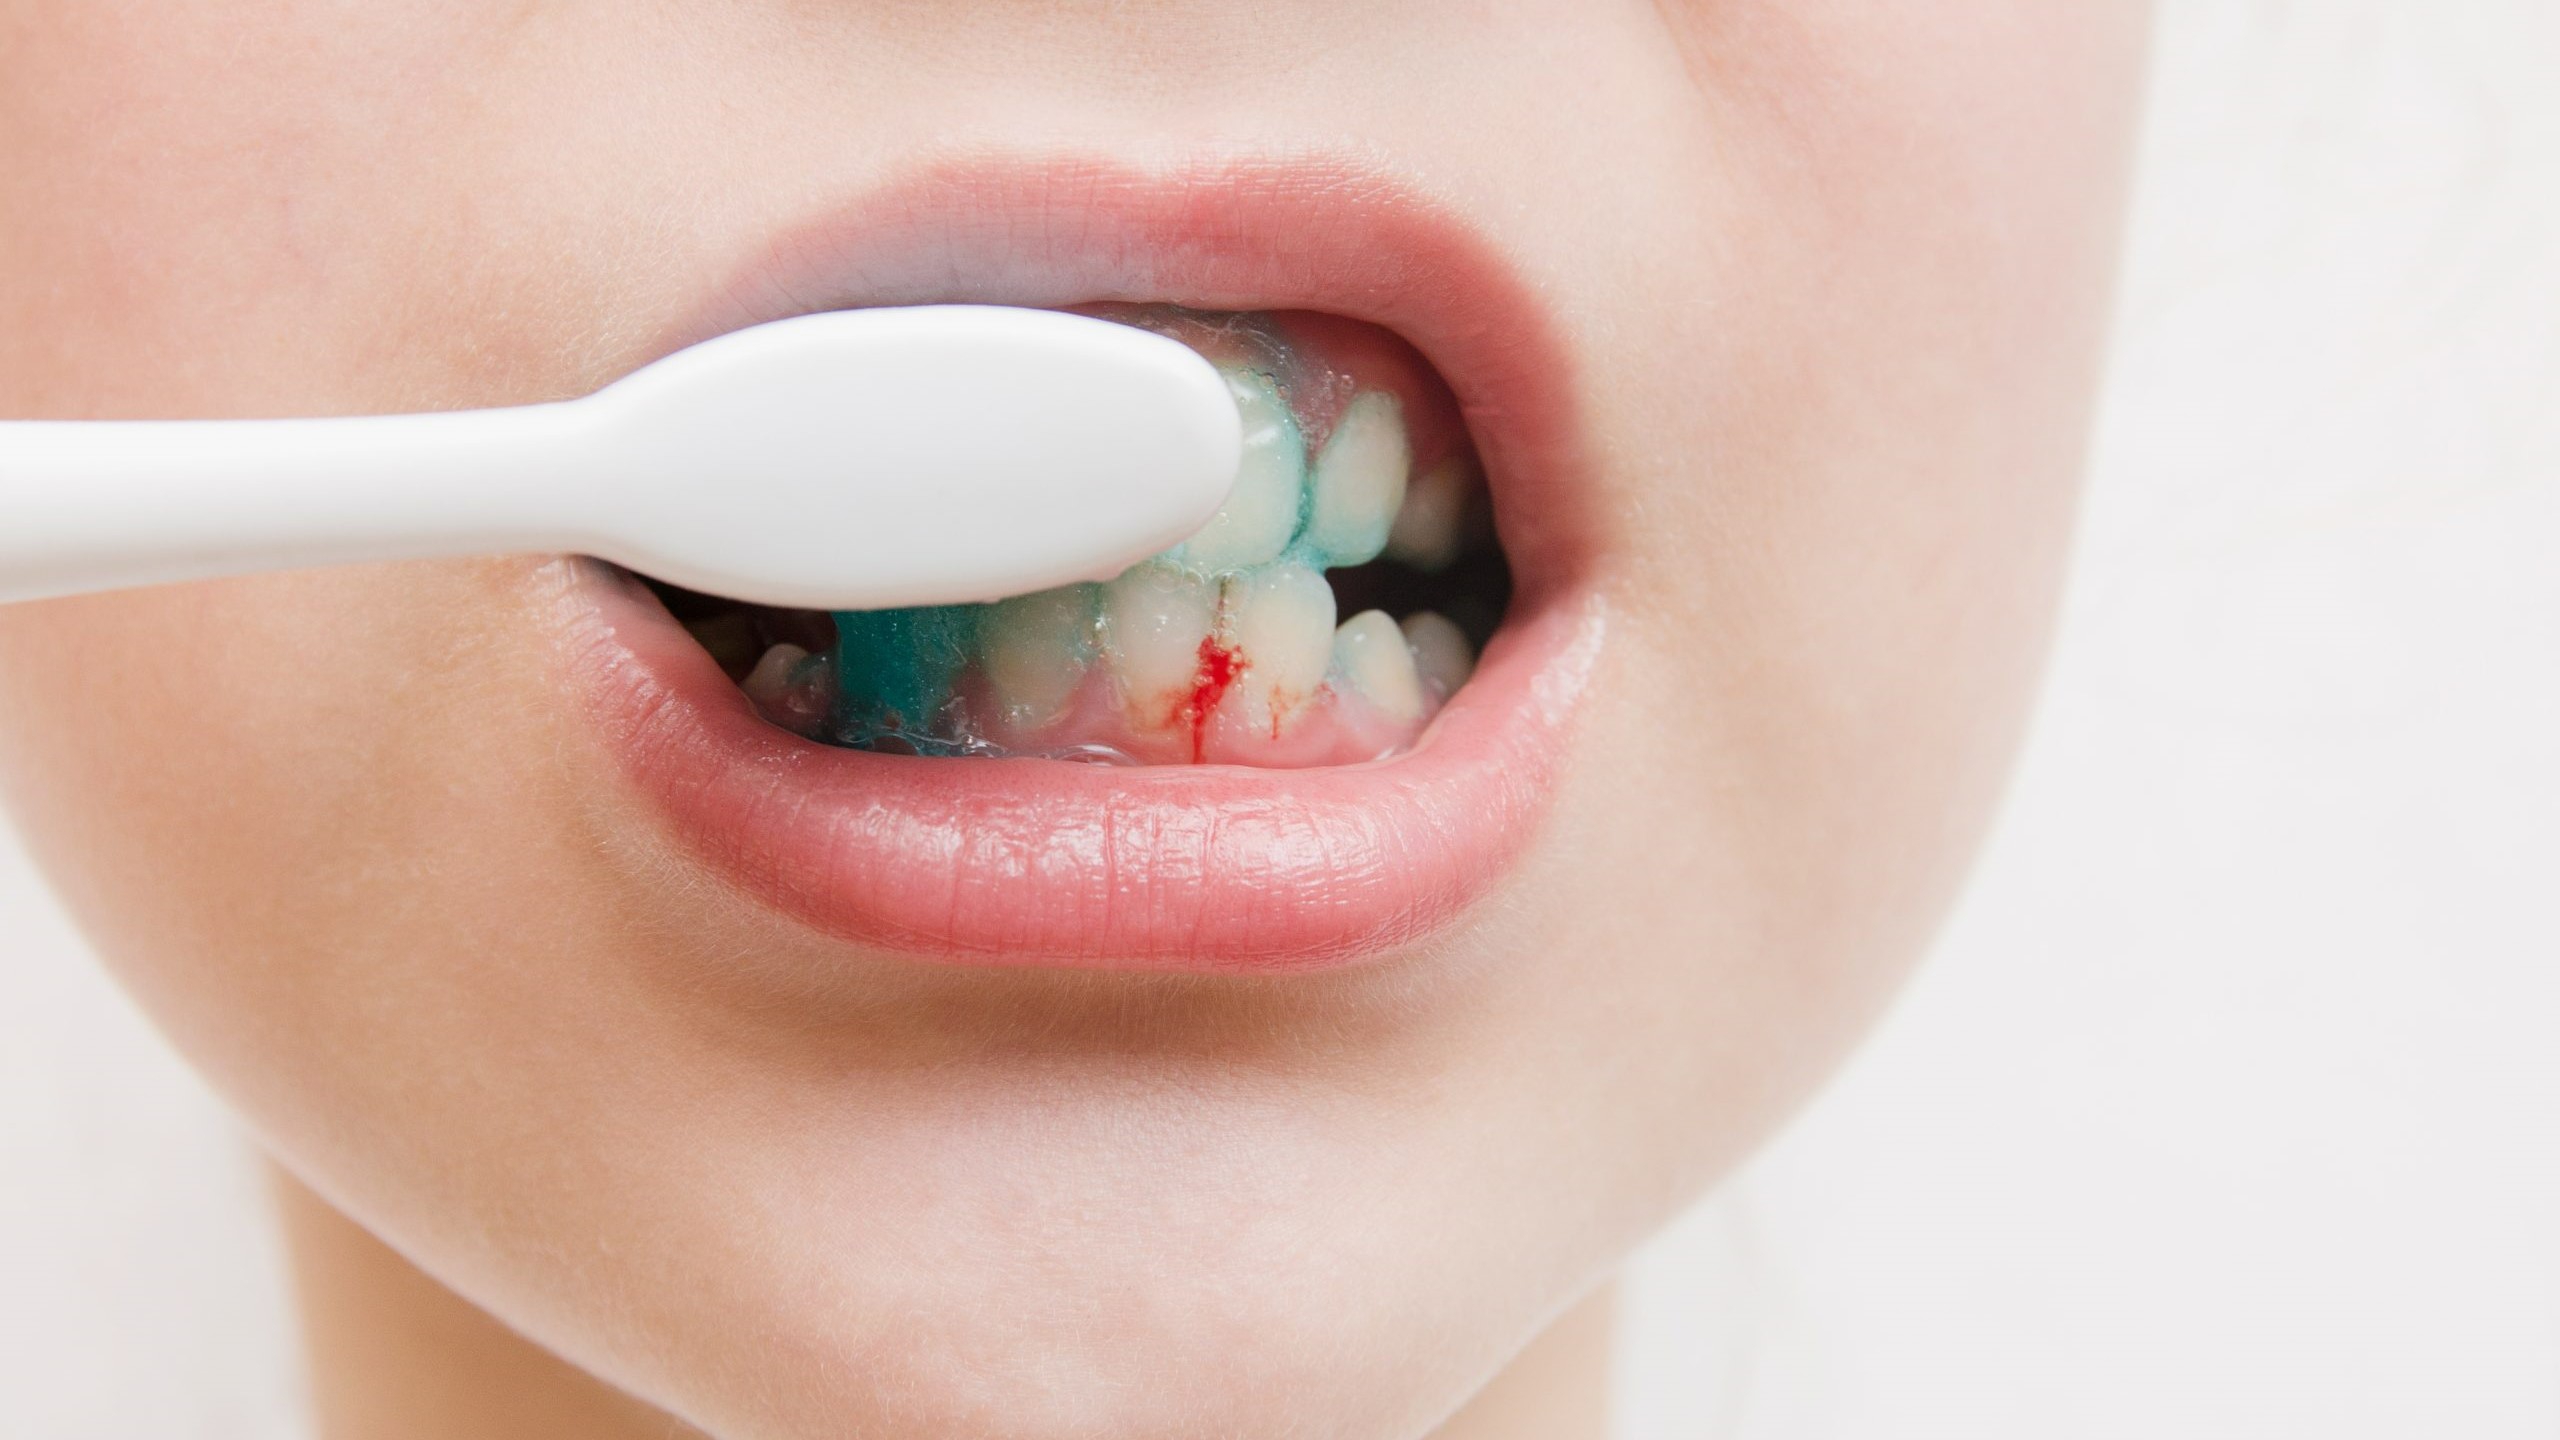 Bên cạnh thuốc, có các biện pháp nào khác có thể giúp giảm đau chân răng?